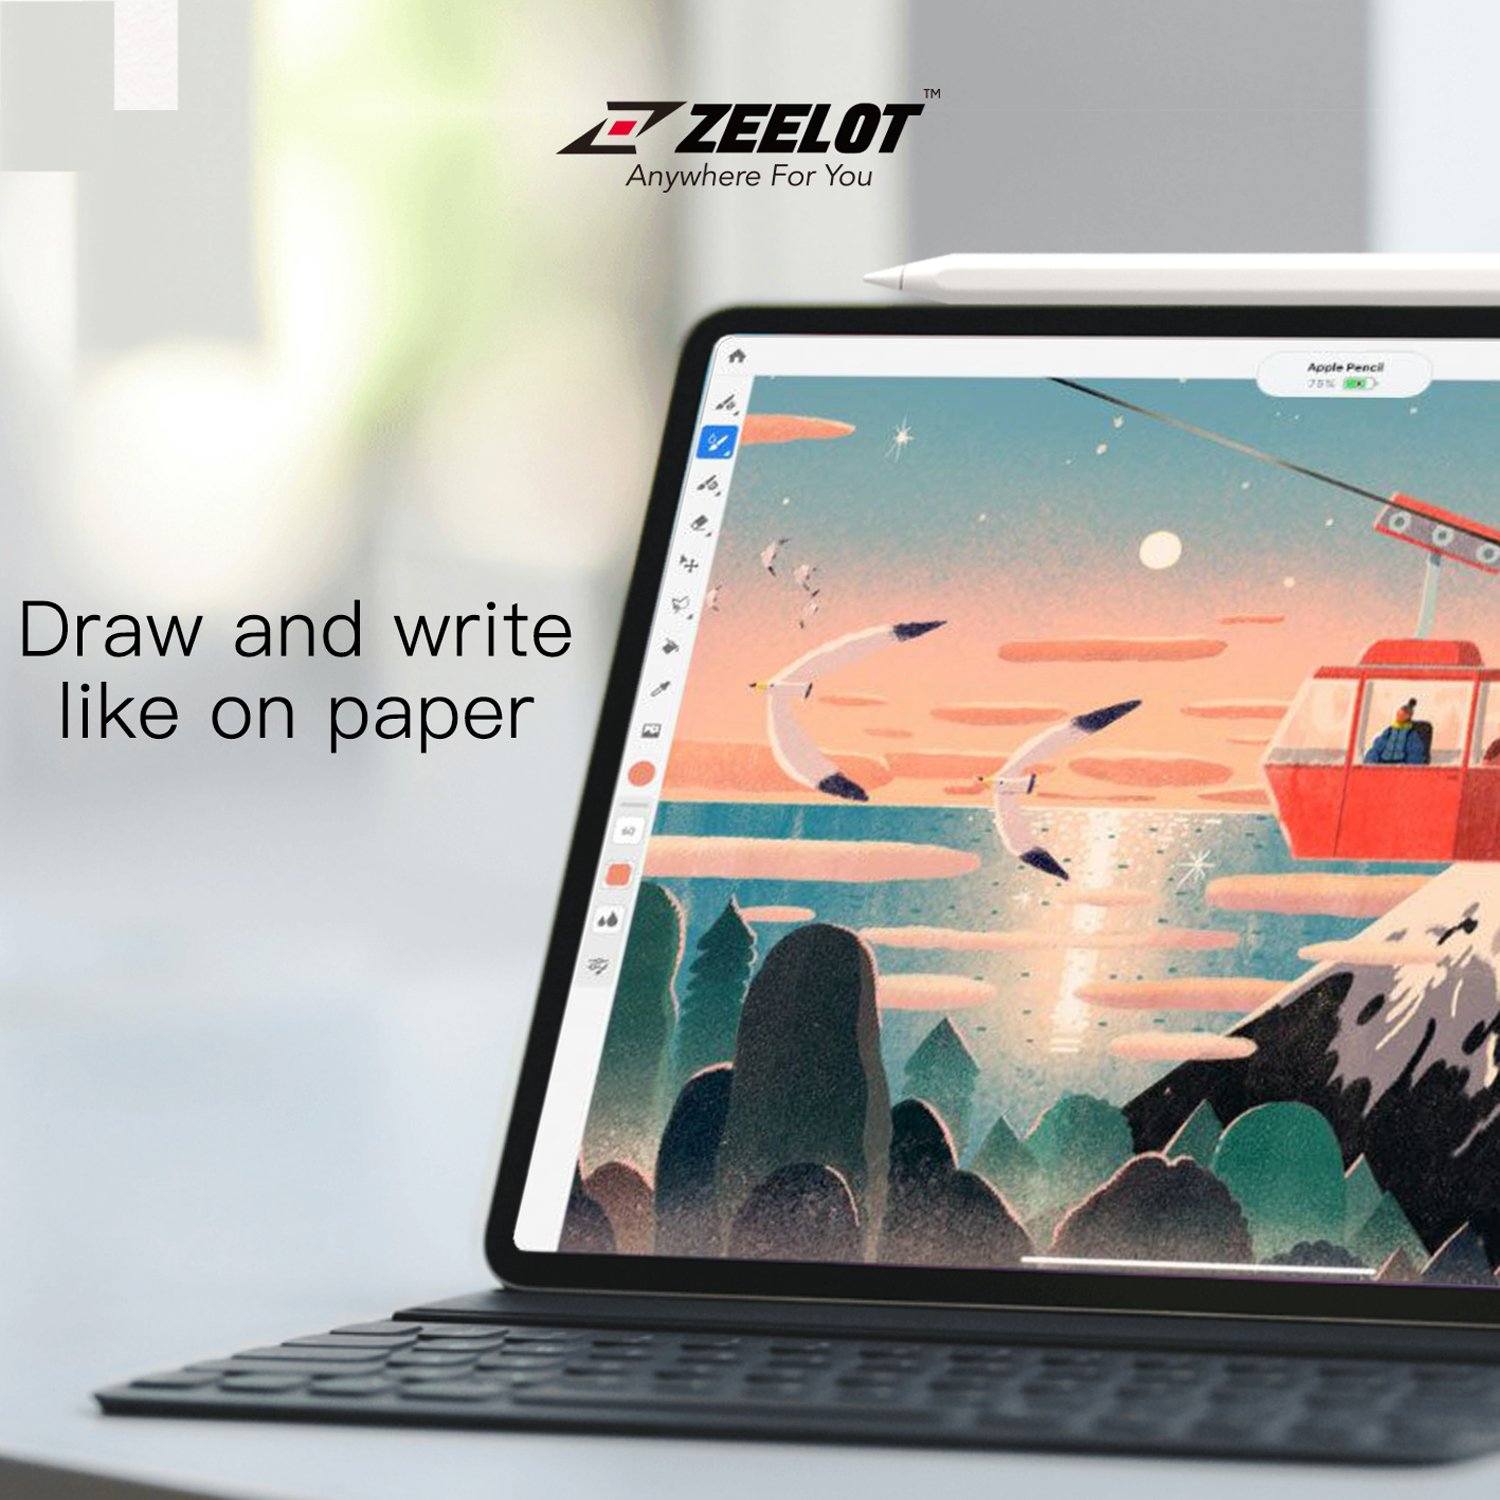 ZEELOT Paper Like Screen Protector for iPad Pro 12.9"(2020/2018) Default Zeelot 